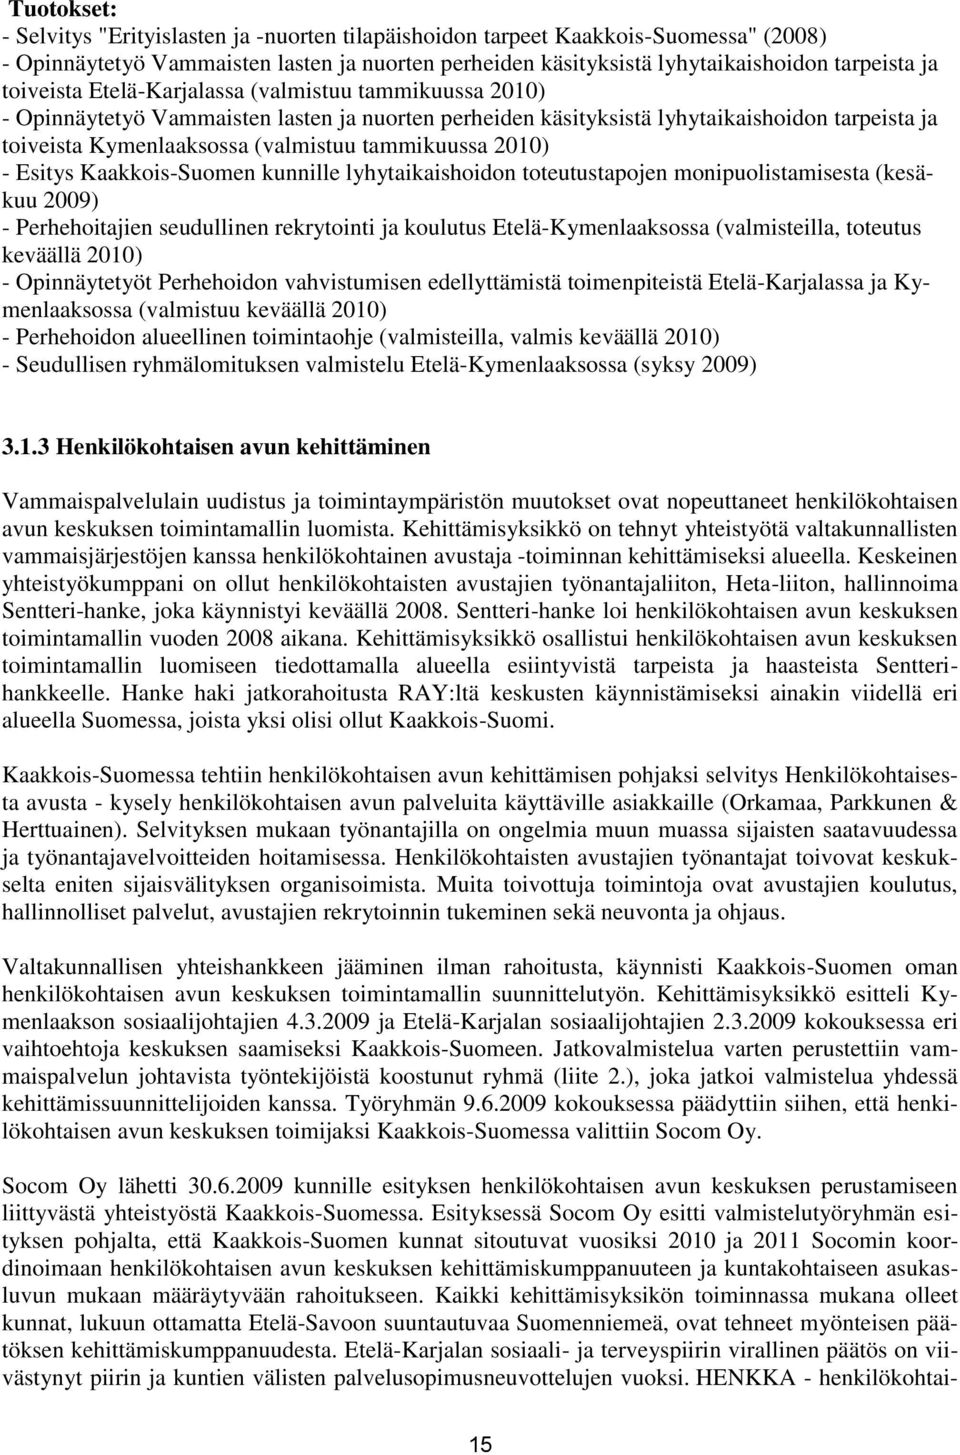 tammikuussa 2010) - Esitys Kaakkois-Suomen kunnille lyhytaikaishoidon toteutustapojen monipuolistamisesta (kesäkuu 2009) - Perhehoitajien seudullinen rekrytointi ja koulutus Etelä-Kymenlaaksossa